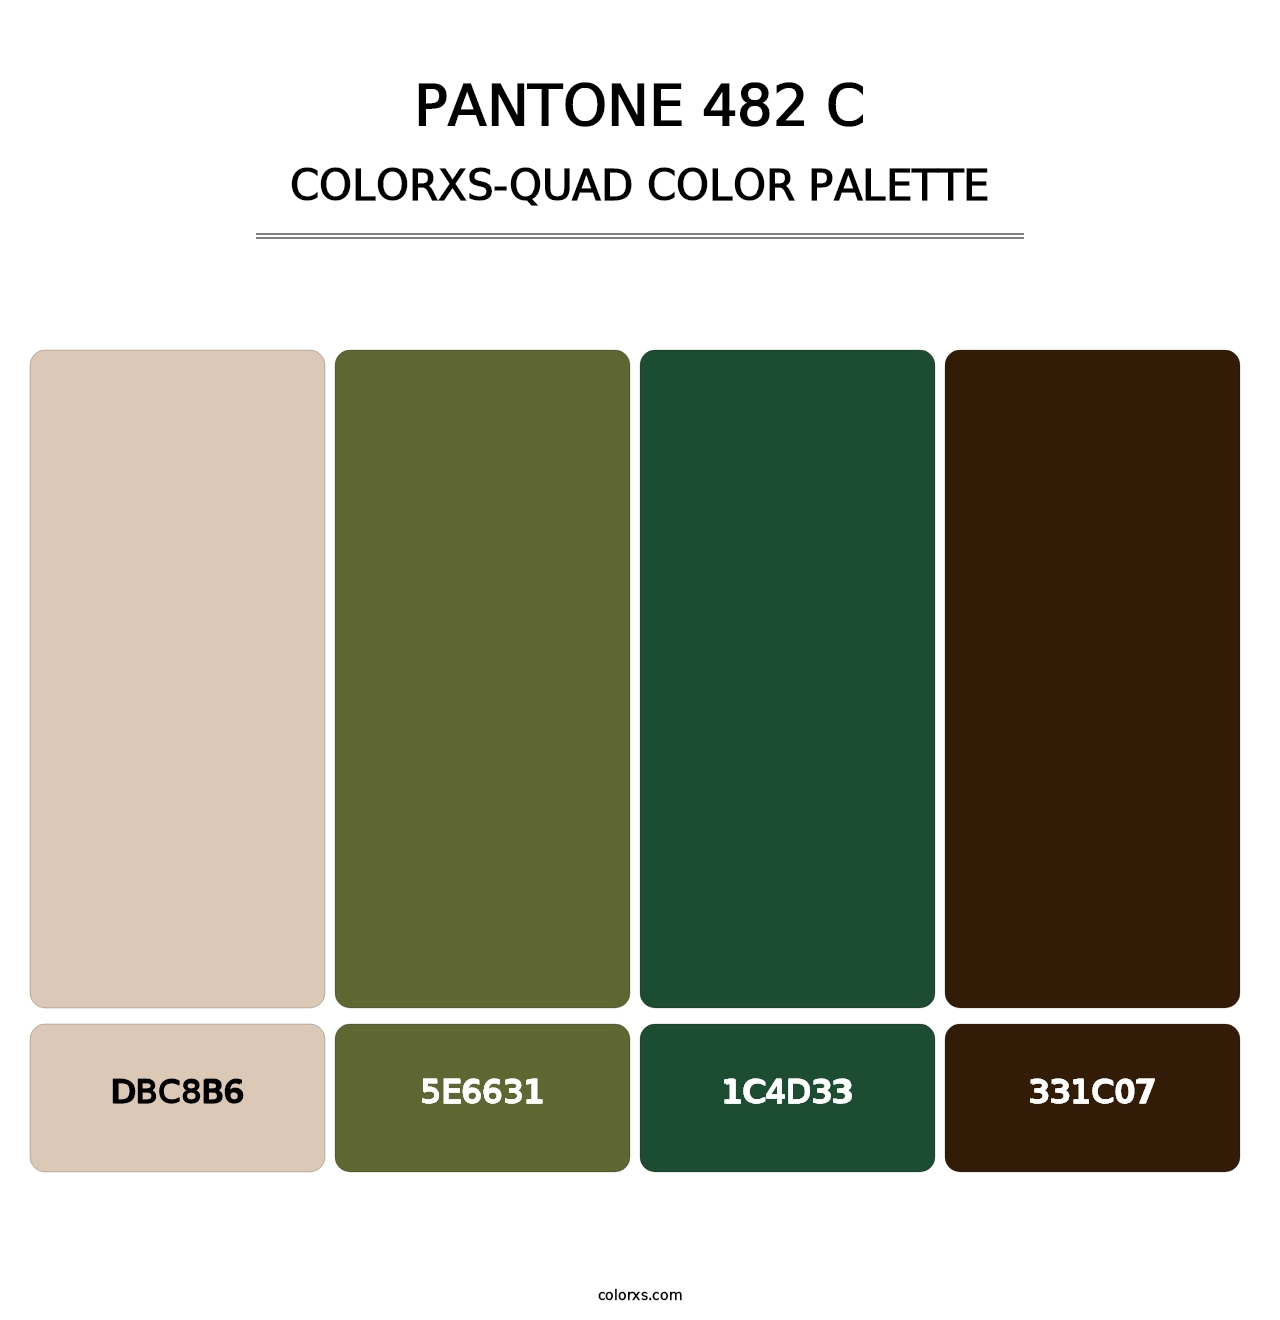 PANTONE 482 C - Colorxs Quad Palette